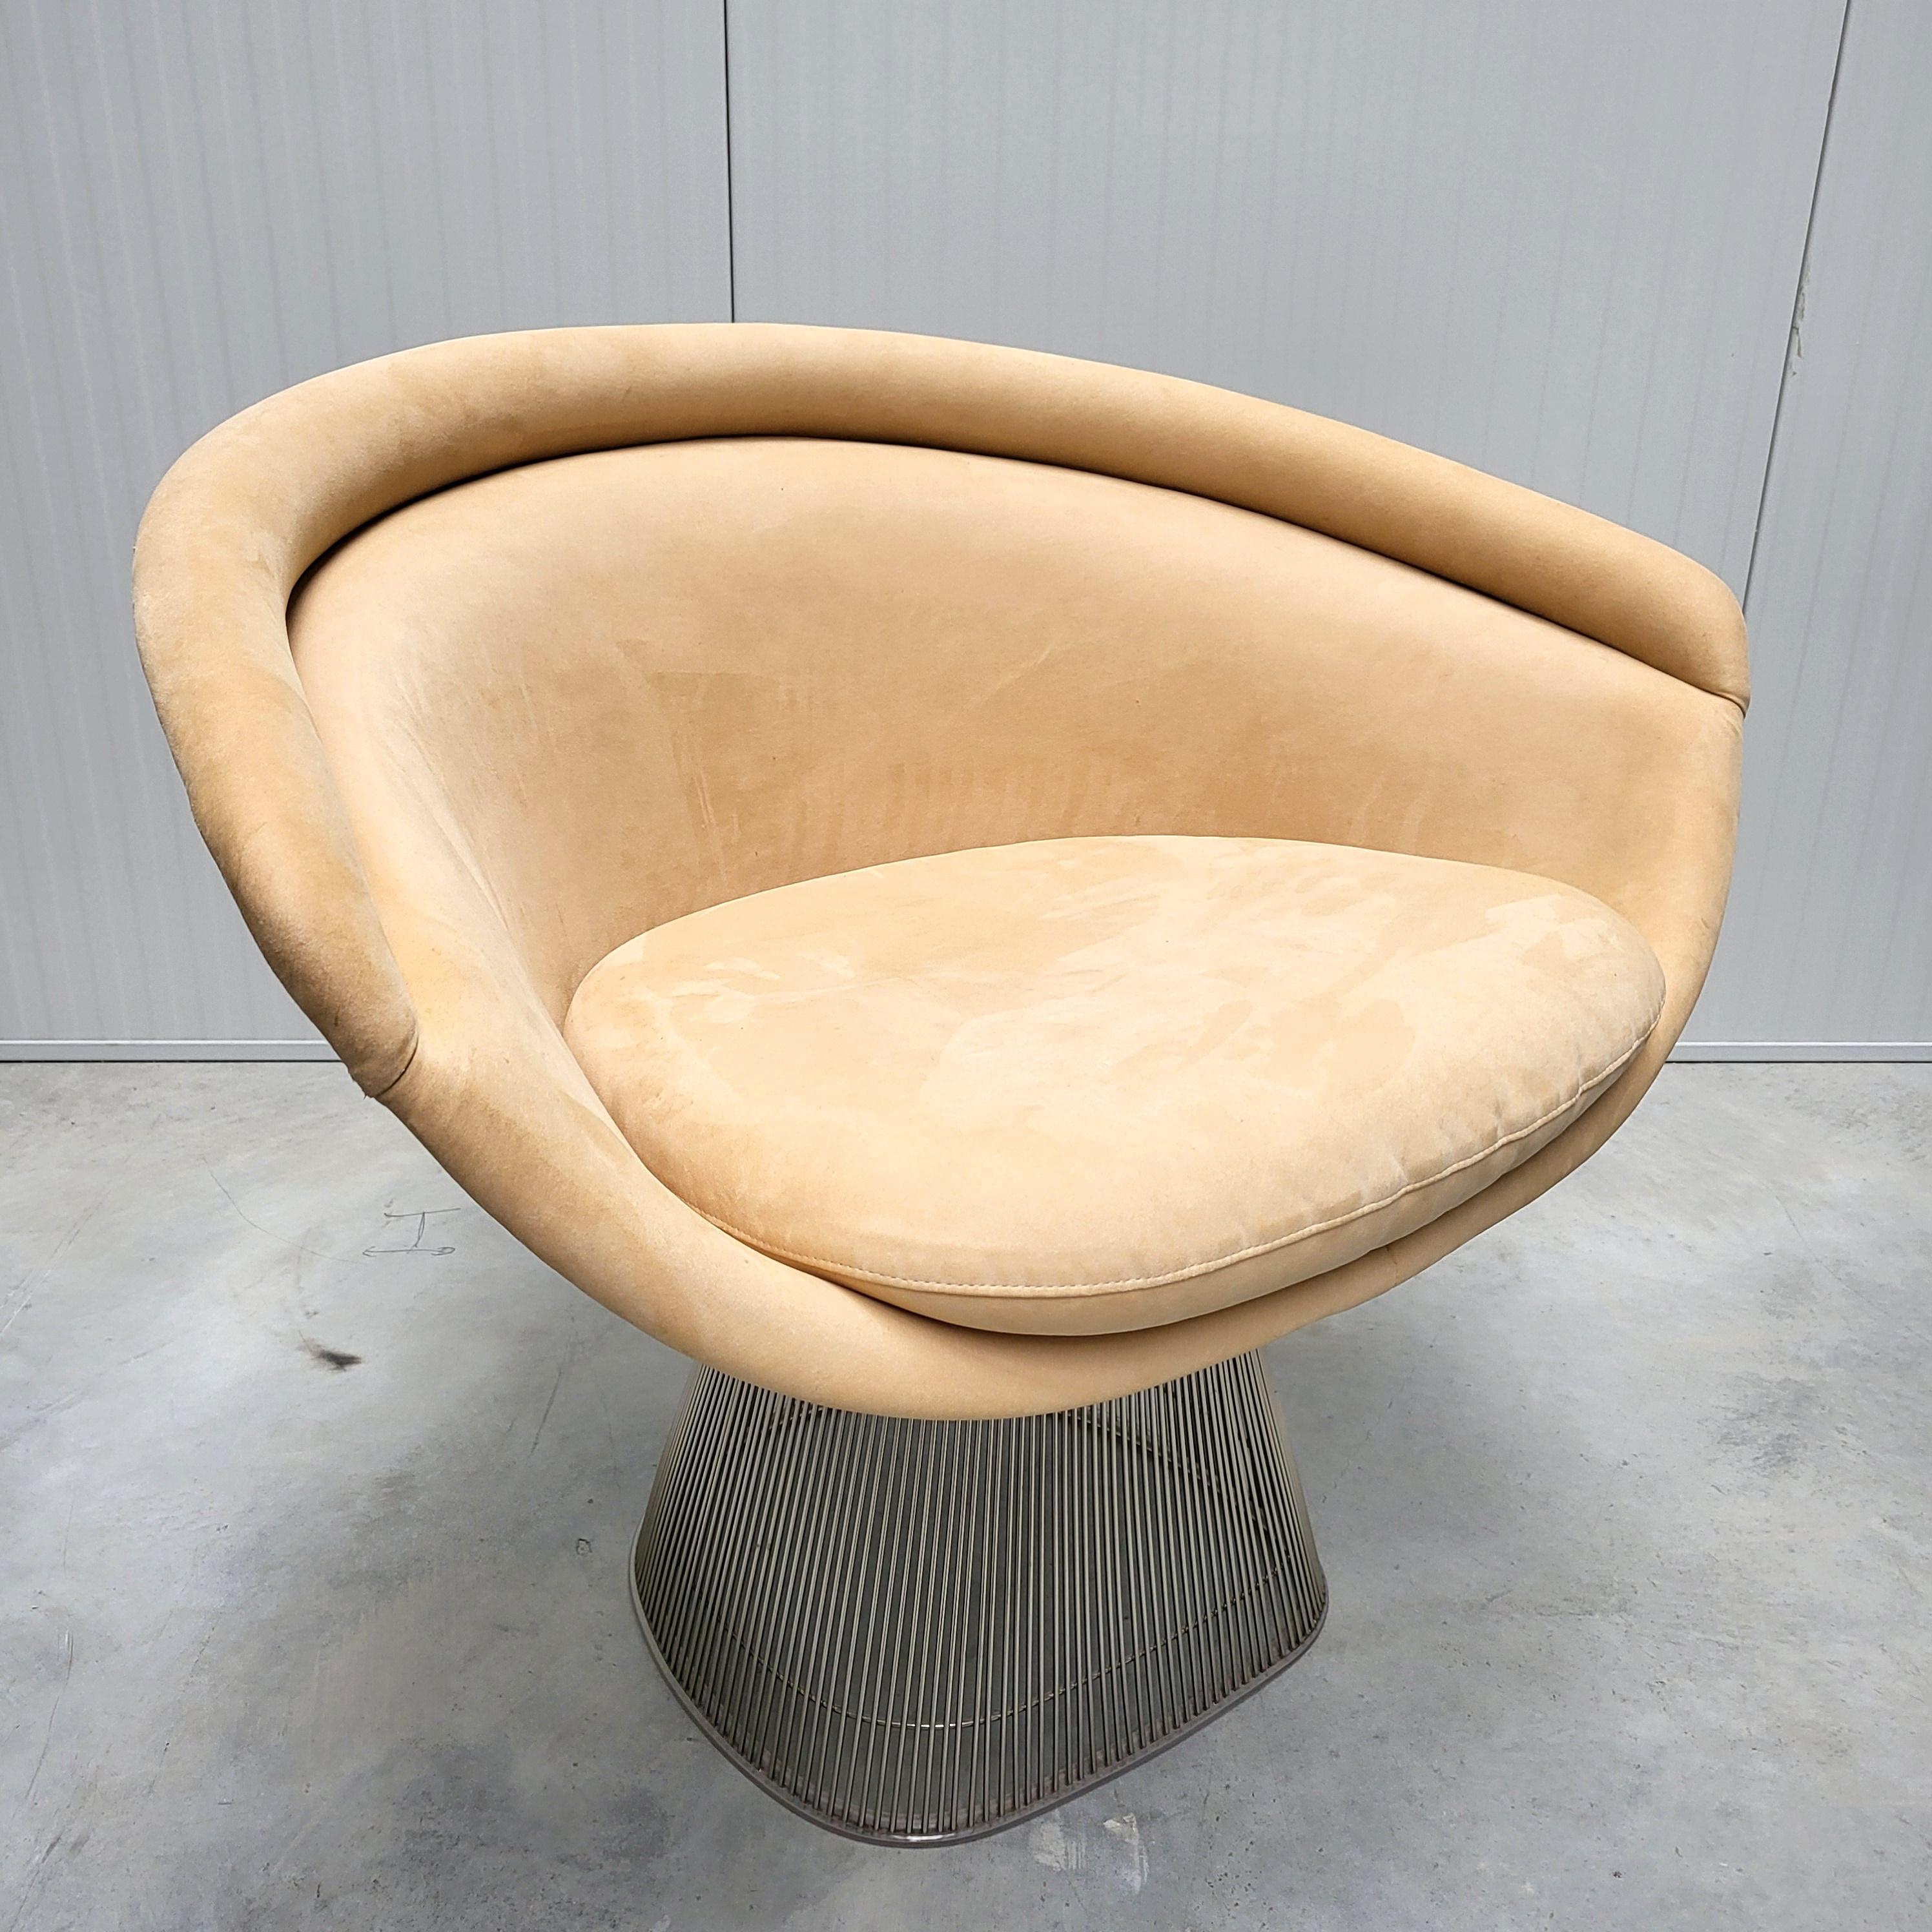 Beeindruckender Beige-Elfenbein-Ultra-Wildleder-Sessel von Warren Platner für Knoll. 

Der bahnbrechende Loungesessel wurde in den 1960er Jahren von Warren Platner entworfen und in den frühen 2000er Jahren von Knoll produziert. Dieser Klassiker aus